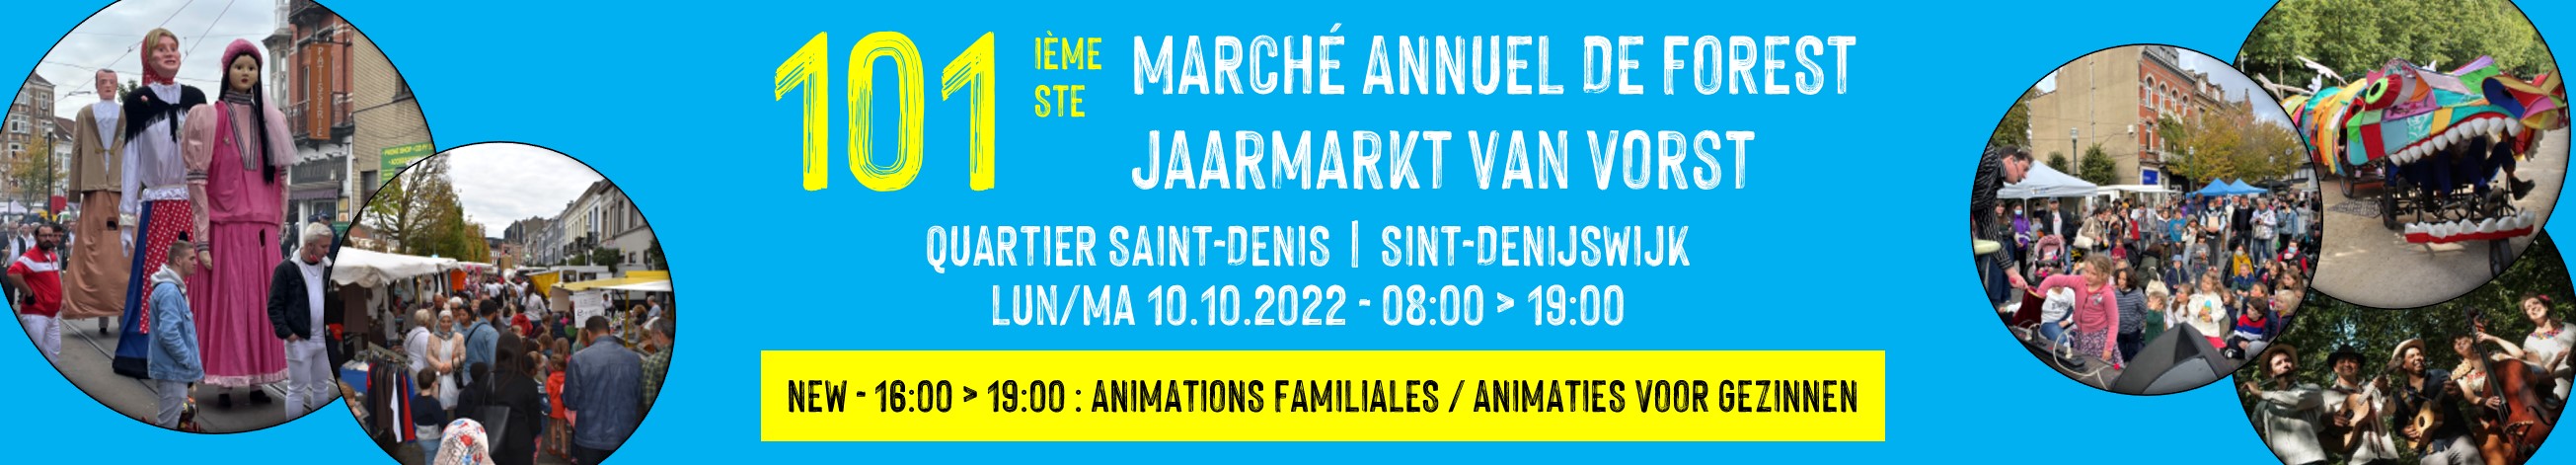 Marché annuel 2022 Banner site